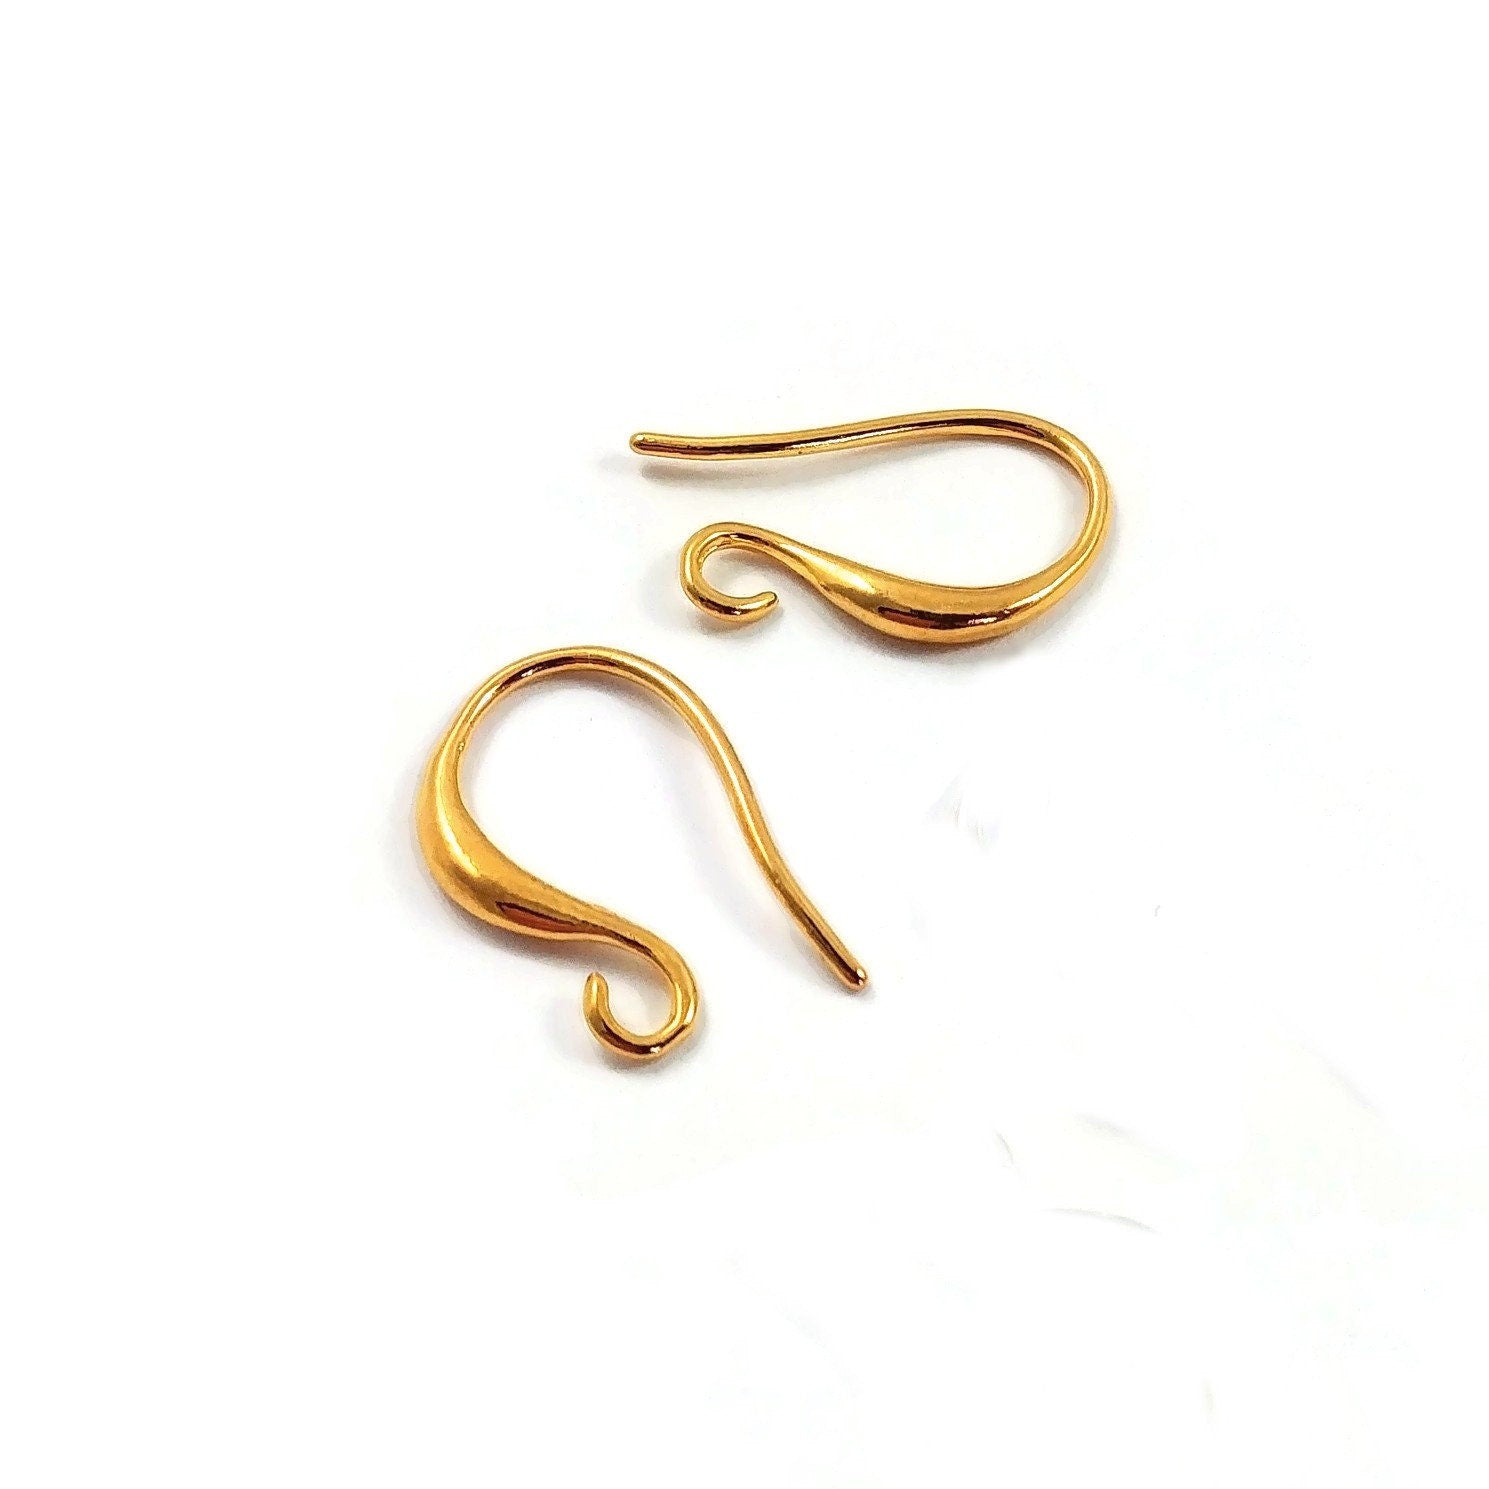 Brass Earring Hooks, For Making Earrings, Size: 4 Mm at Rs 600/kg in Delhi